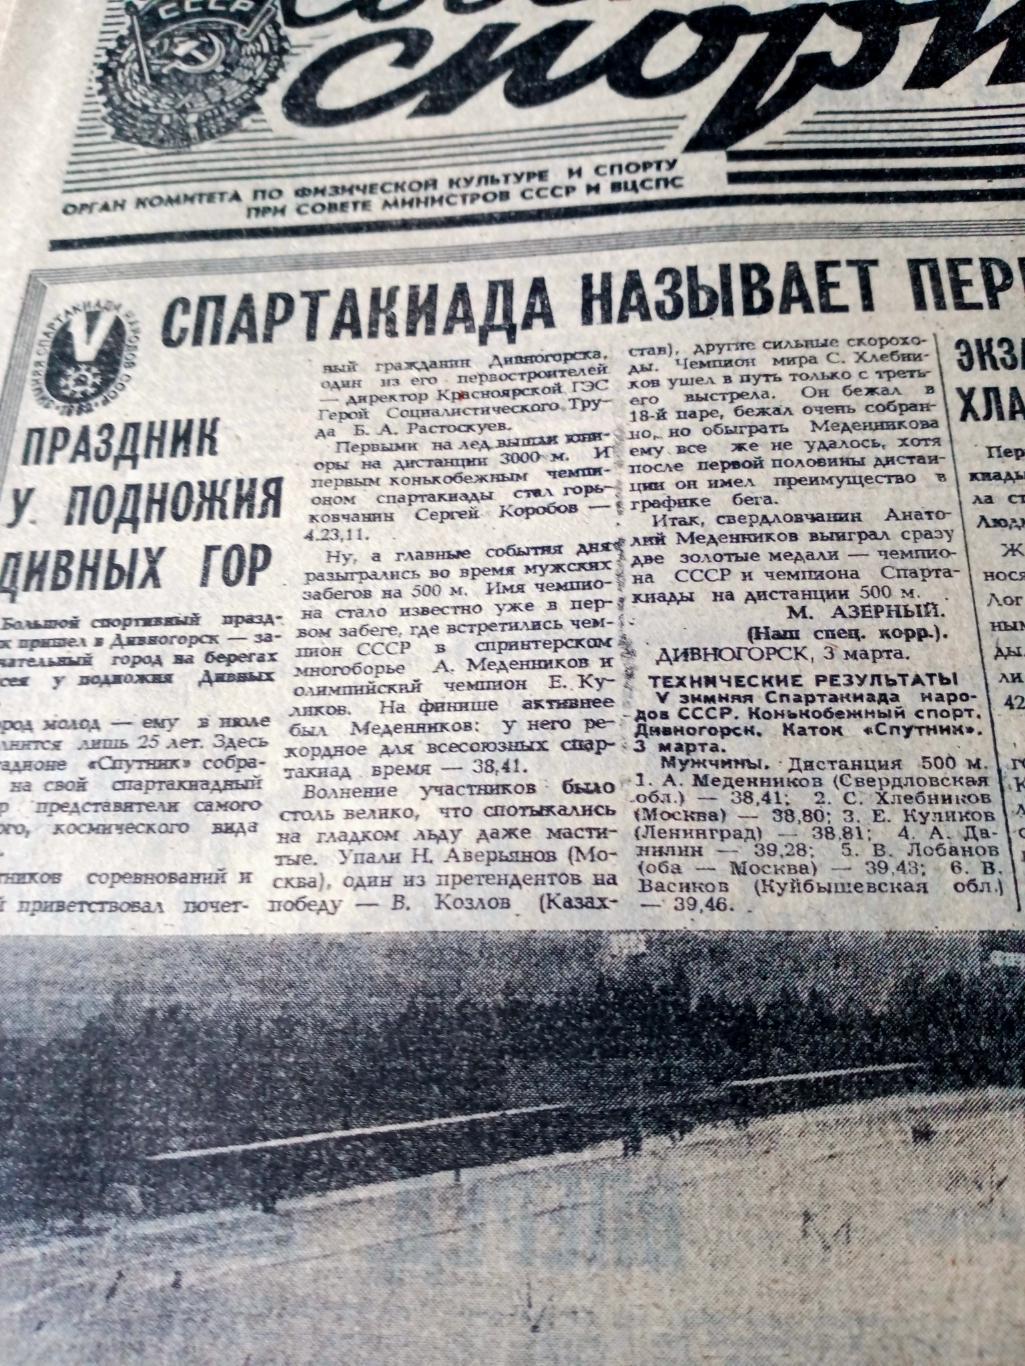 Еврокубки. Советский спорт. 1982 год. 4 марта